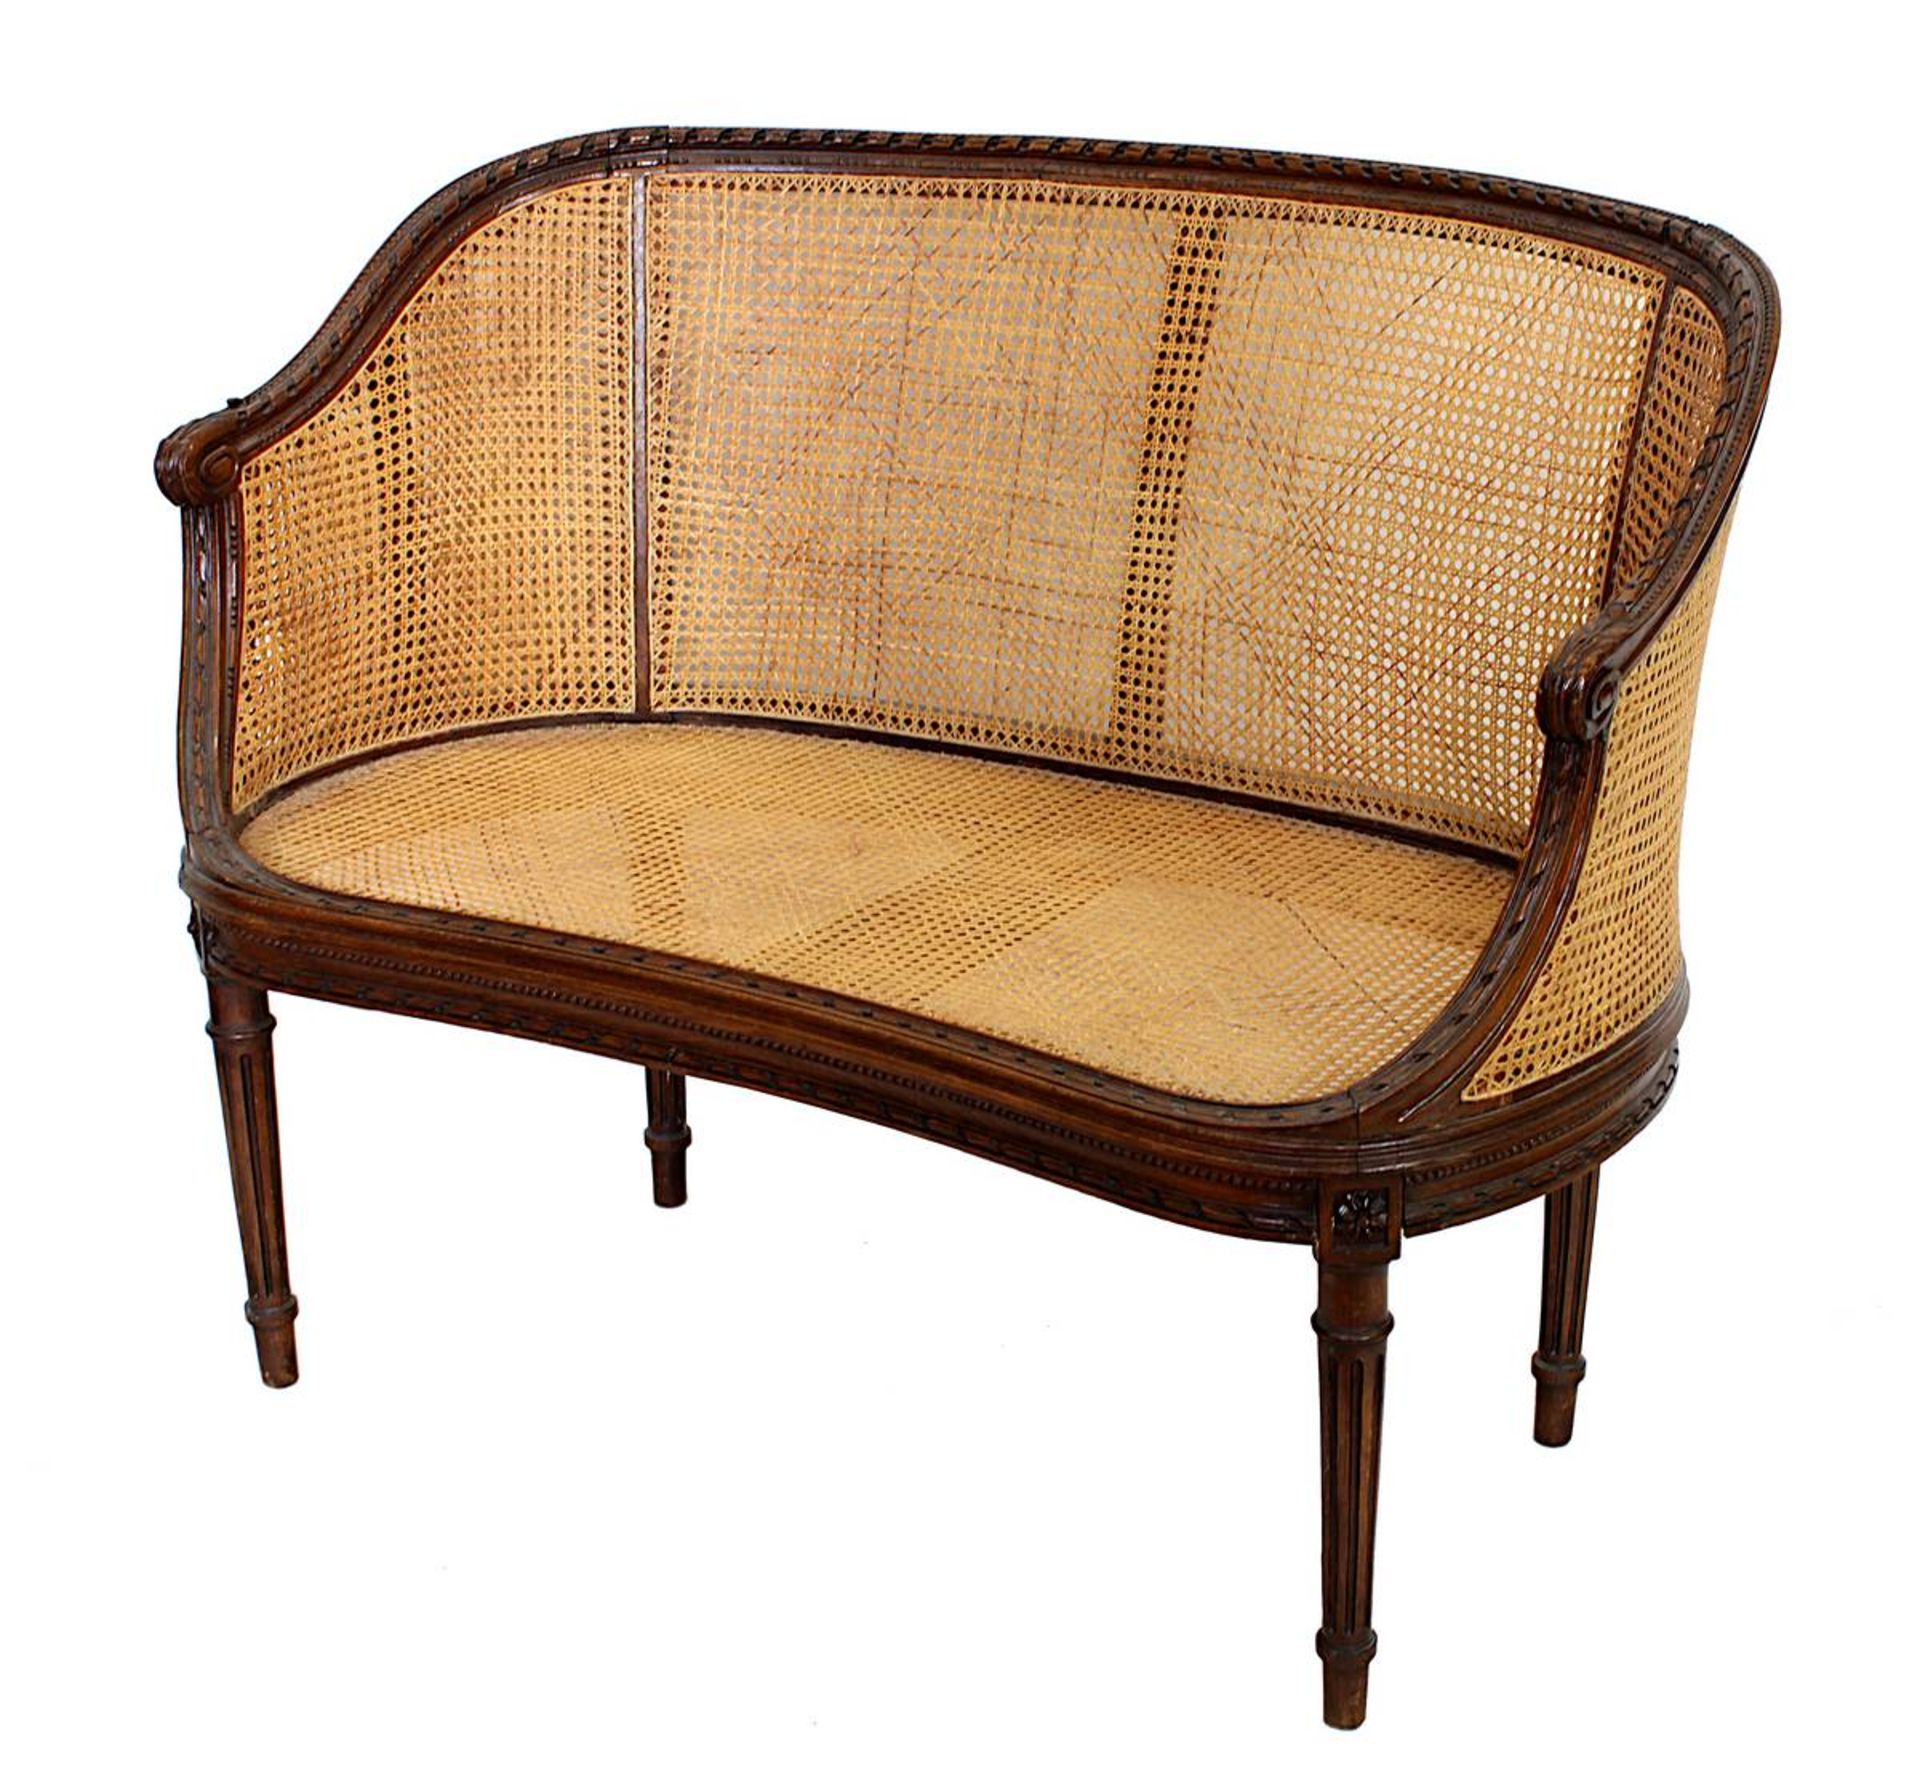 Sitzbank, im Louis XVI Stil, 1. H. 20. Jh., Buche, Nussbaum gebeitzt, geschwungene Form,